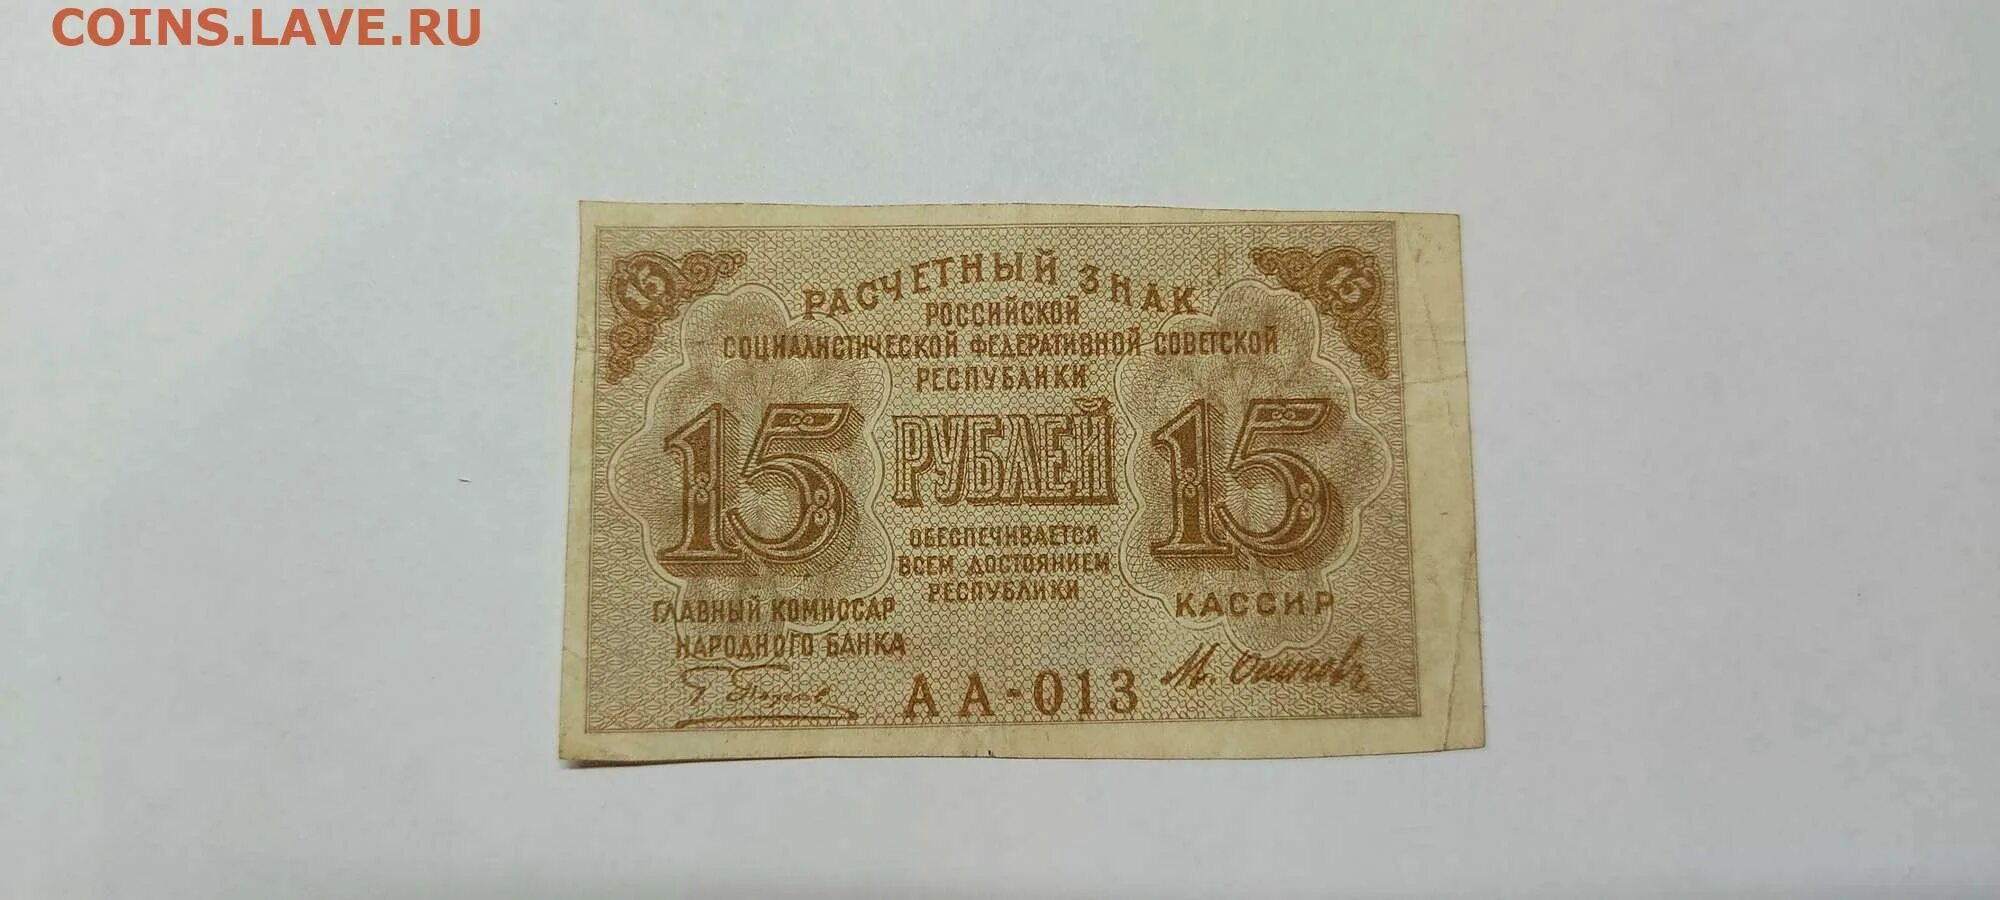 Расчетный знак 15 рублей. Расчетный знак достоинством 15 рубля. Фото денег расчетные знаки 1919 10000. Язычок 15 рублей. Почему 15 рублей